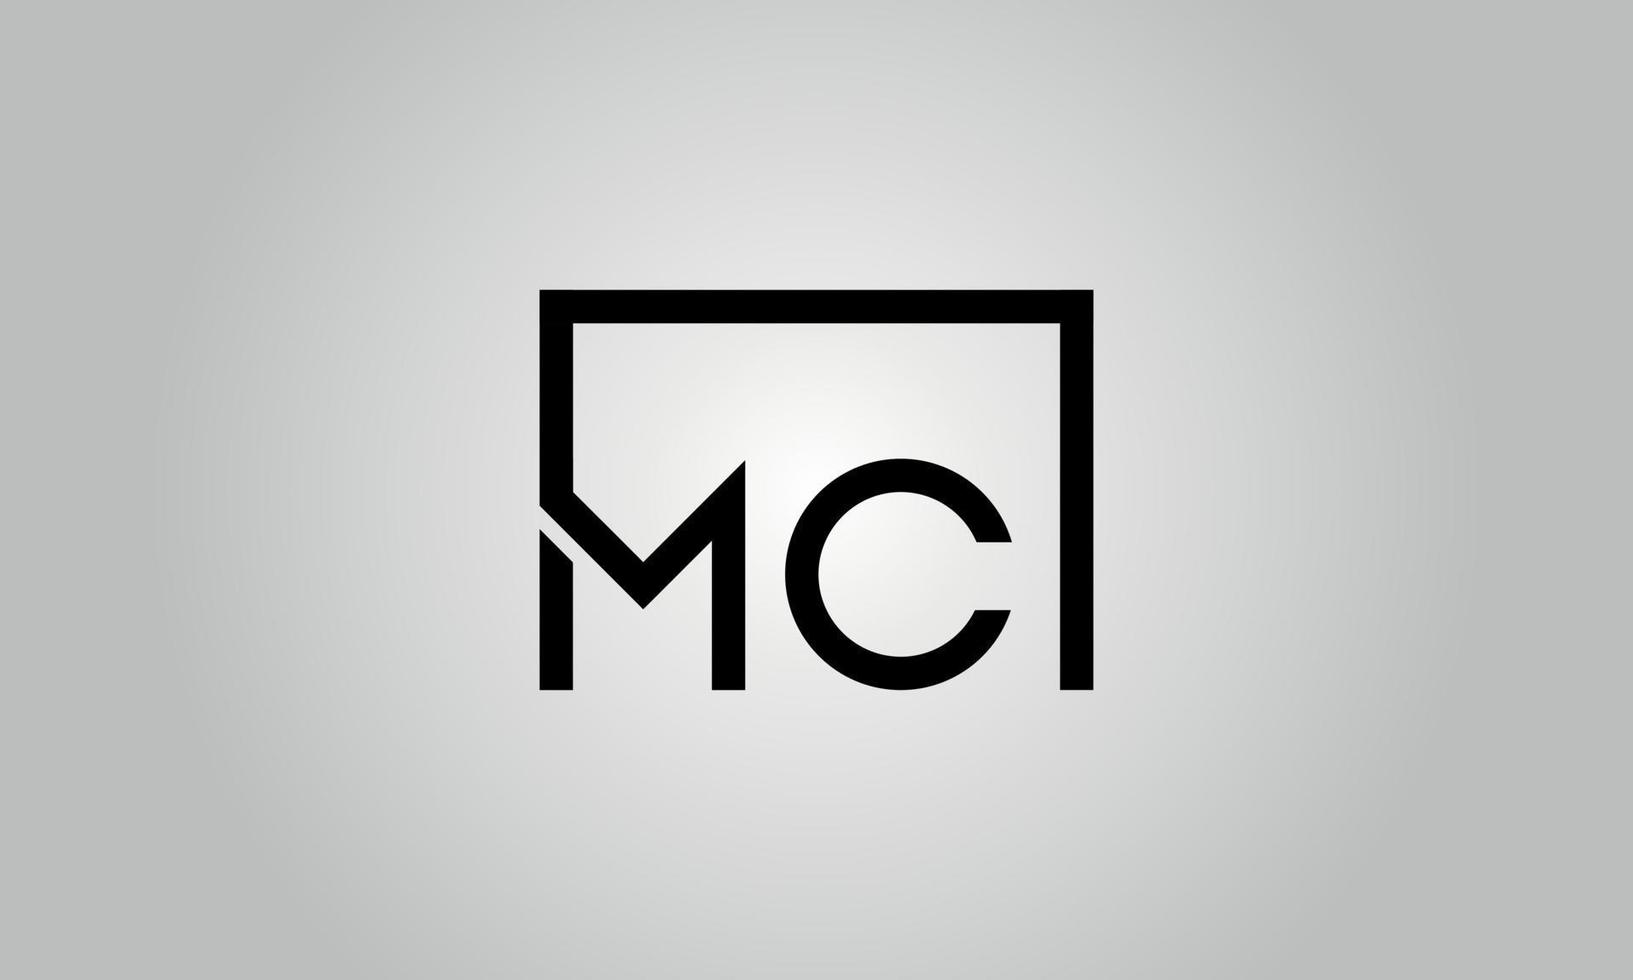 création de logo lettre mc. logo mc avec forme carrée dans le modèle vectoriel gratuit de couleurs noires.